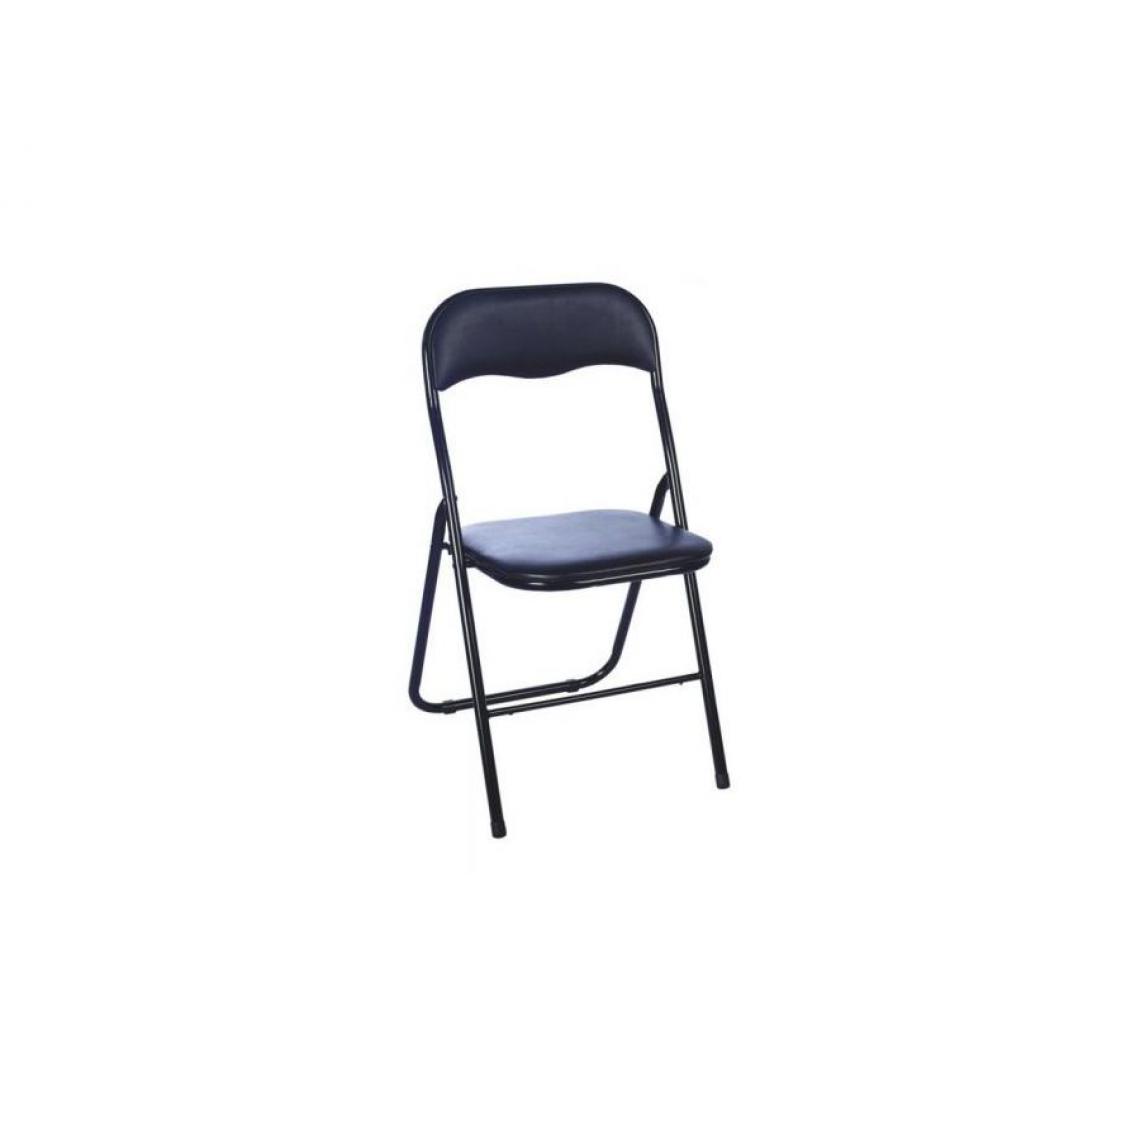 Hucoco - YANI | Chaise en plastique style scandinave | 80x40x40 cm |Assise et dossier rembourrés en similicuir | Cadre en métal - Noir - Chaises